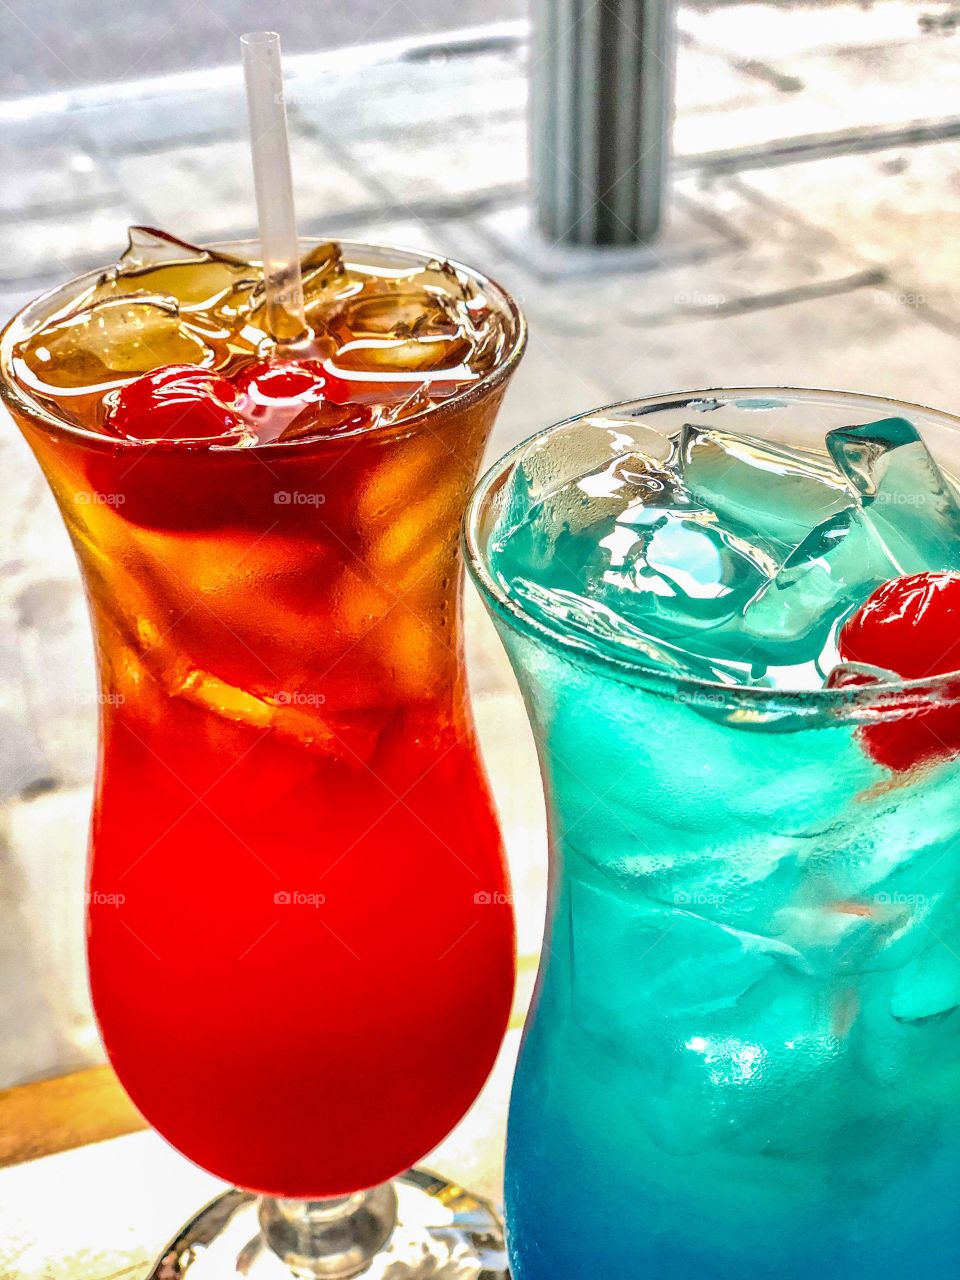 Summer Cocktails 